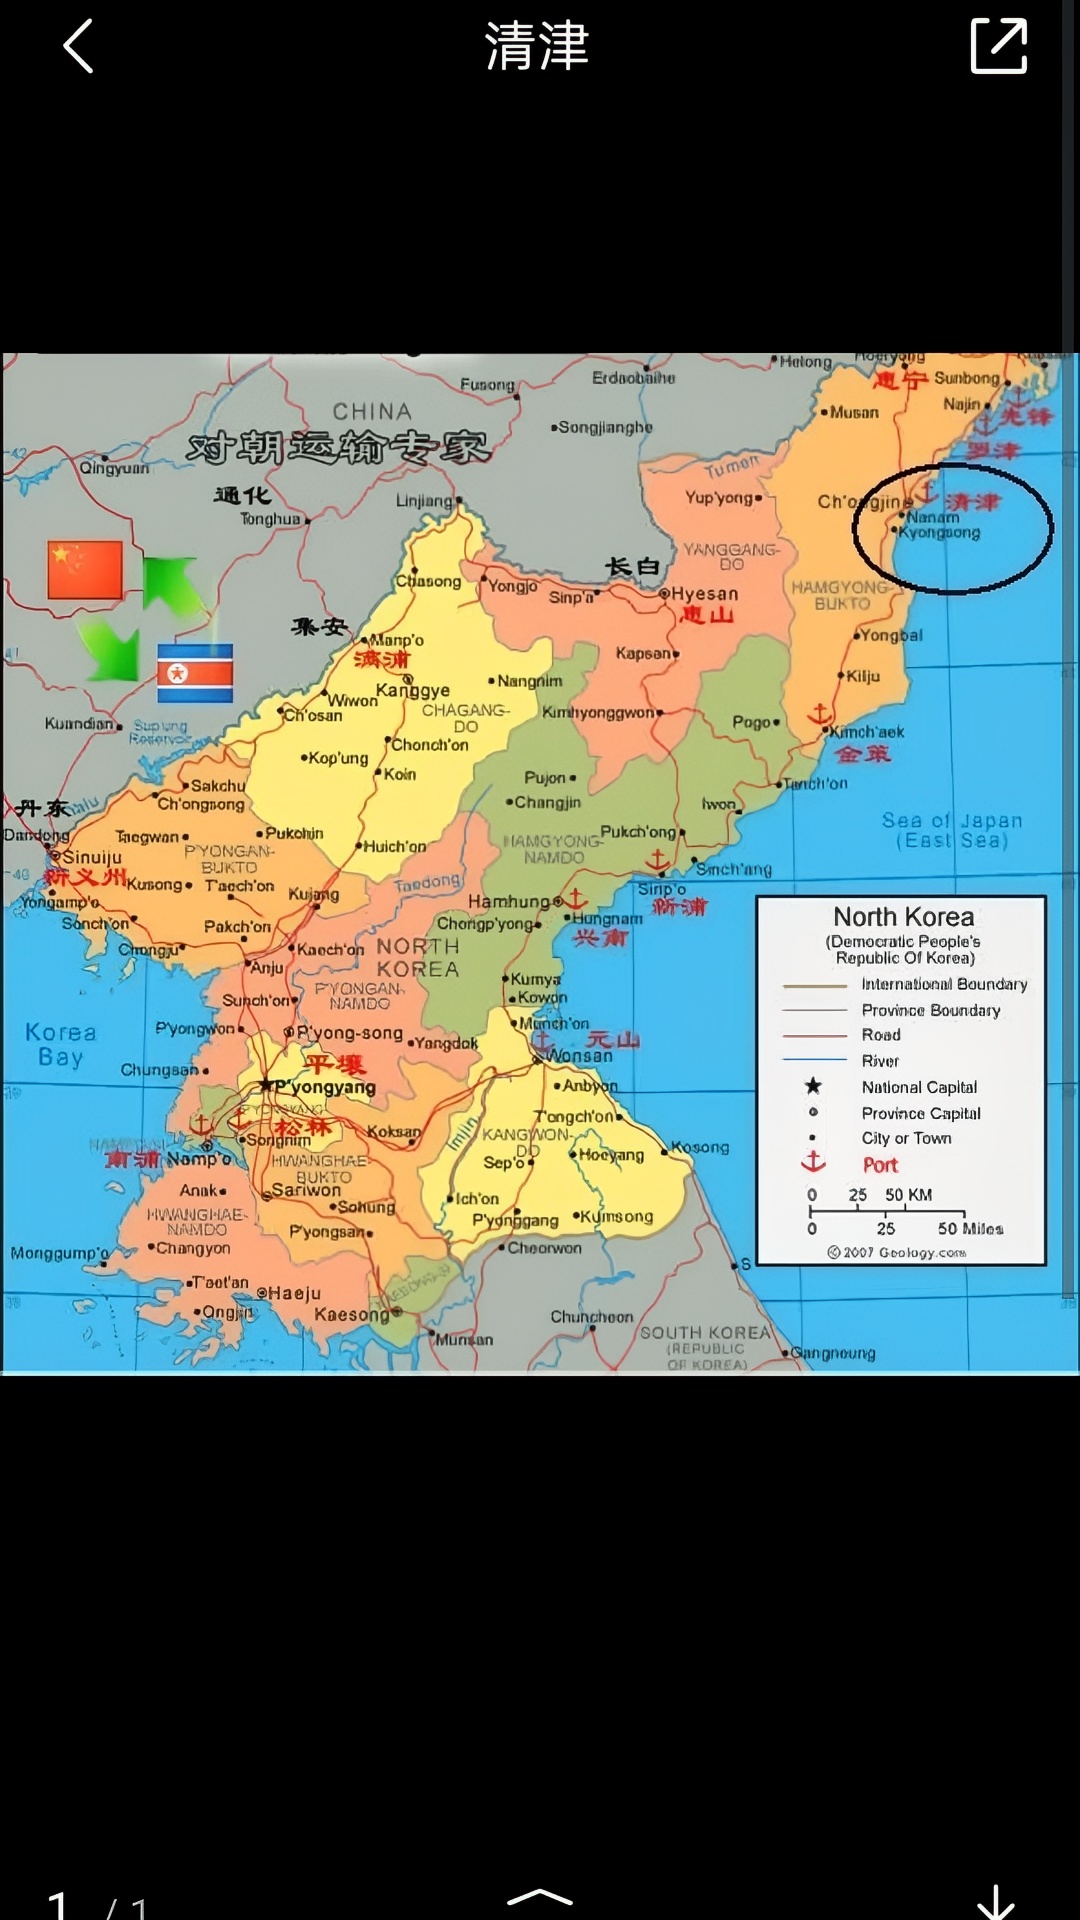 清津(朝鲜)是朝鲜民主主义人民共和国咸镜北道的首府，为朝鲜第3大城市，同时也是朝鲜东北部重要的工业城